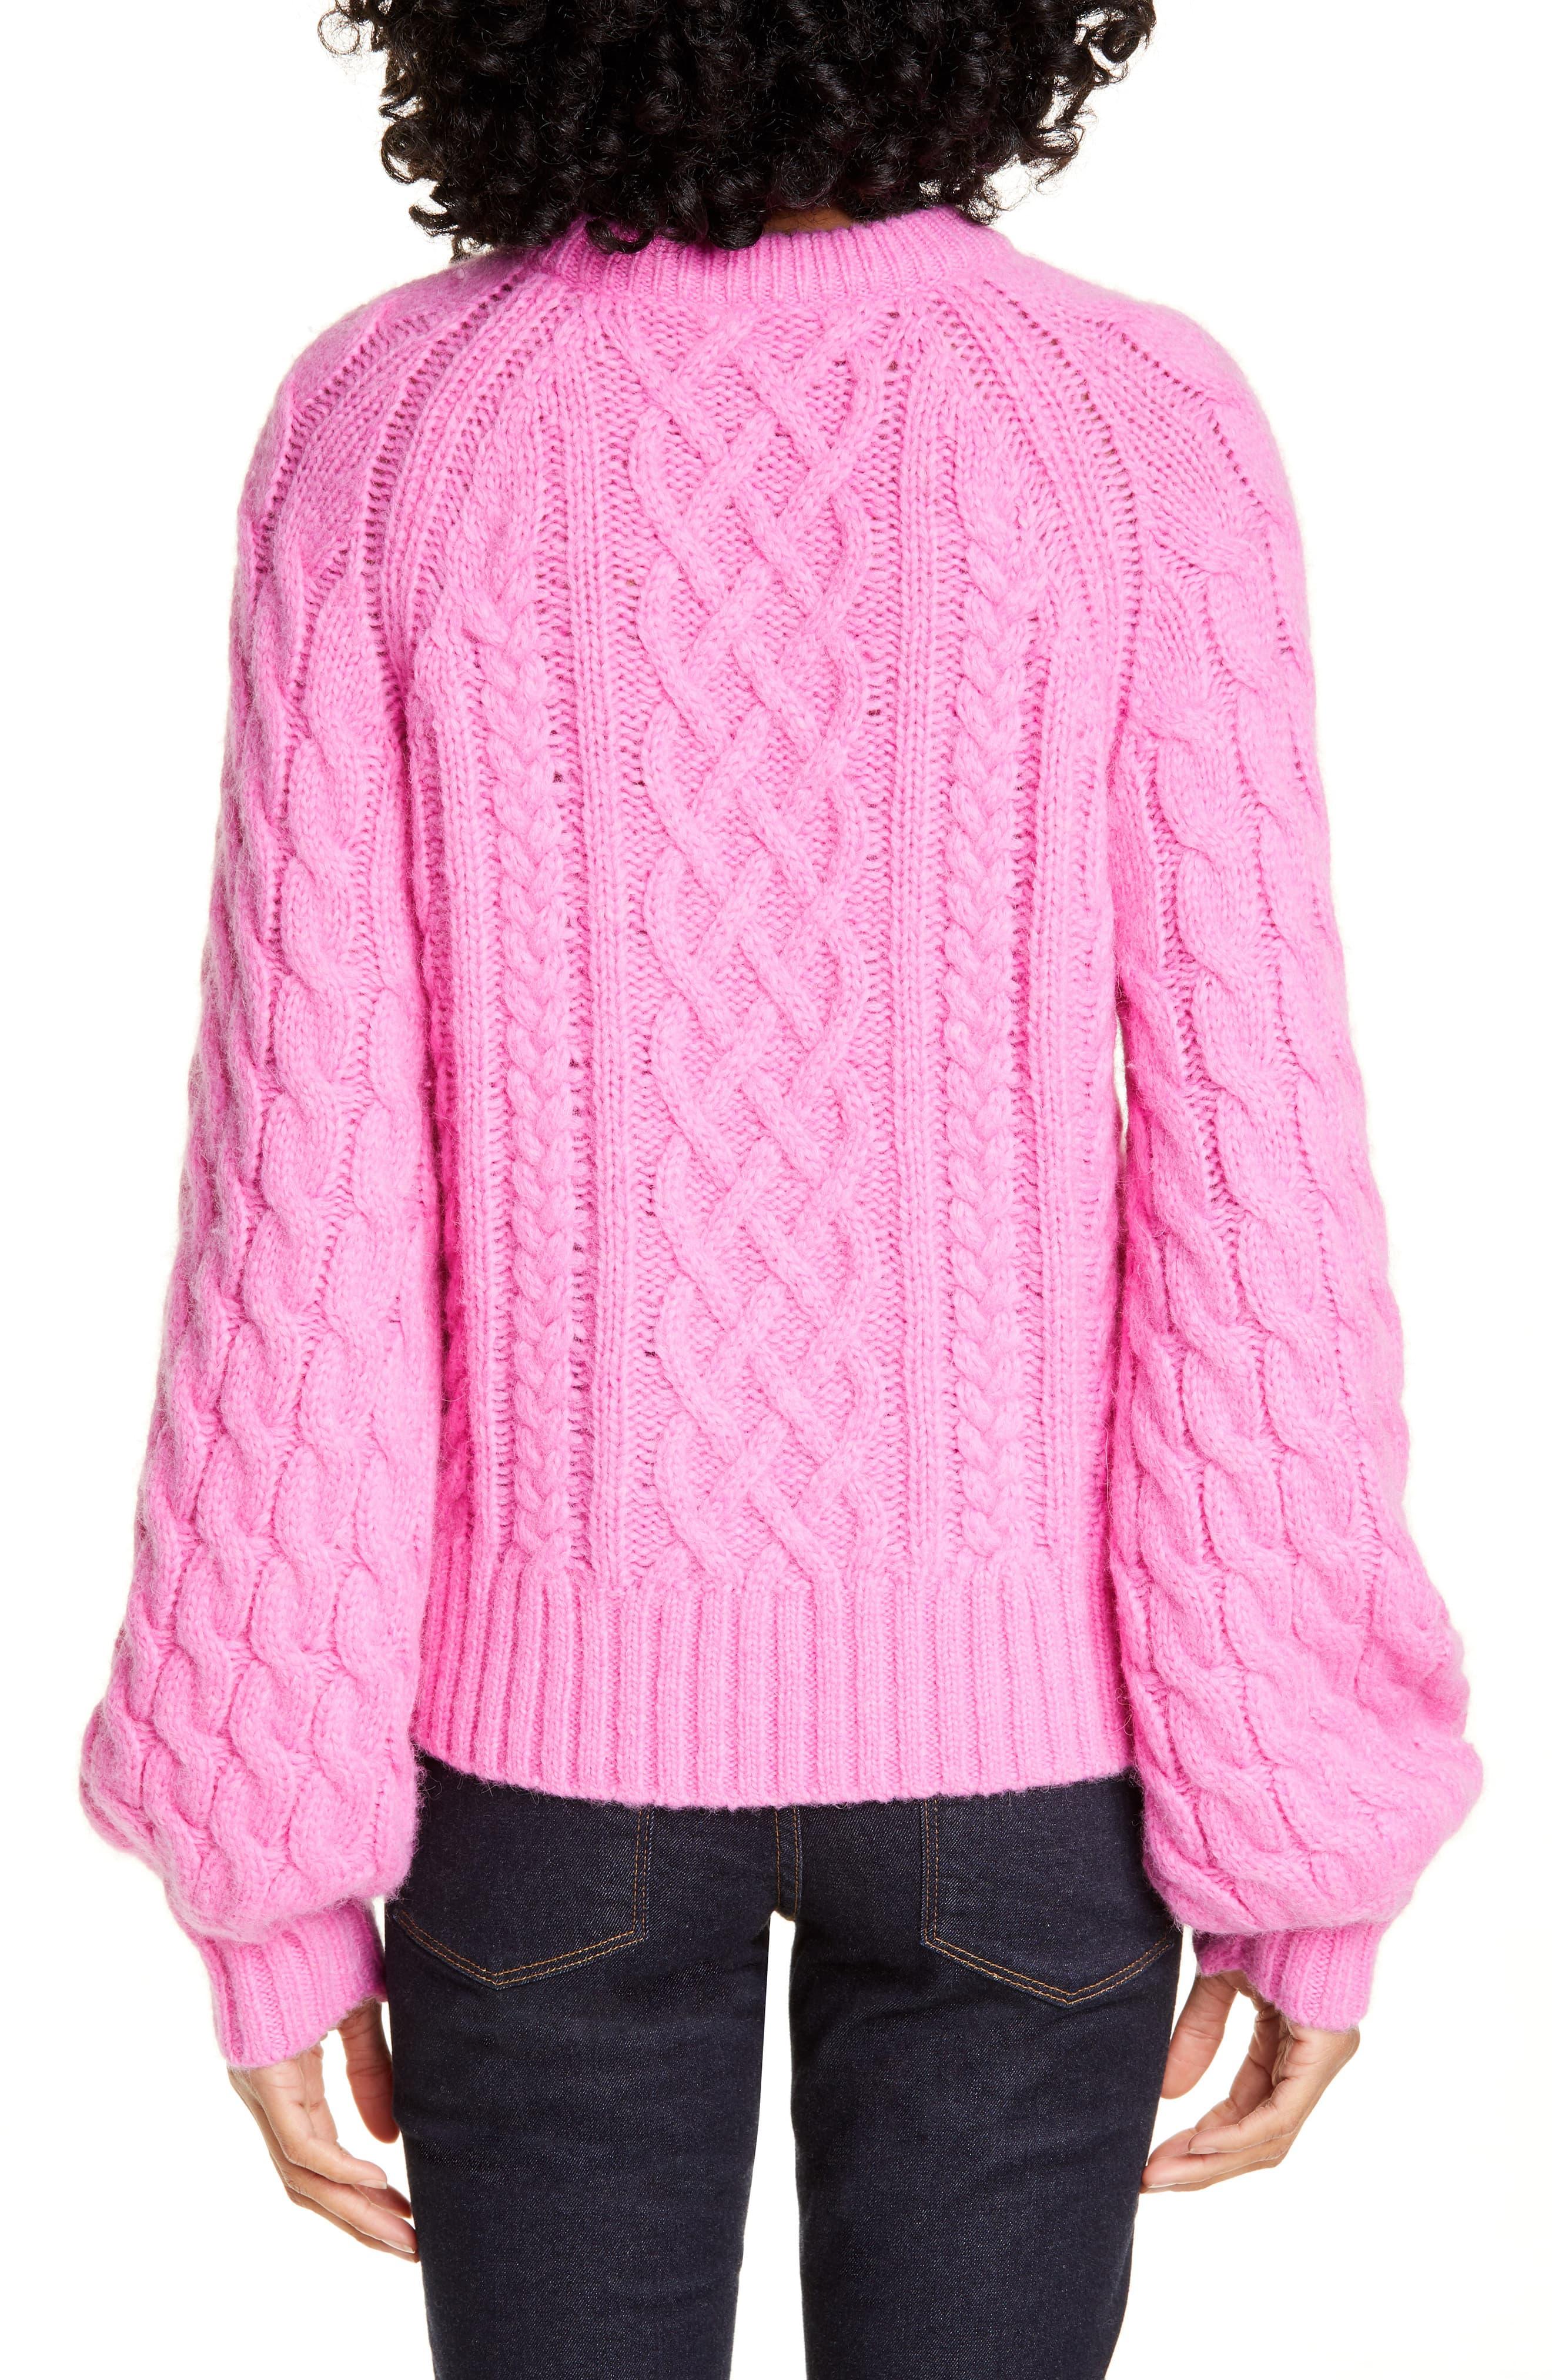 A.L.C. Mick Cable Knit Alpaca Blend Sweater in Bubblegum (Pink) - Lyst